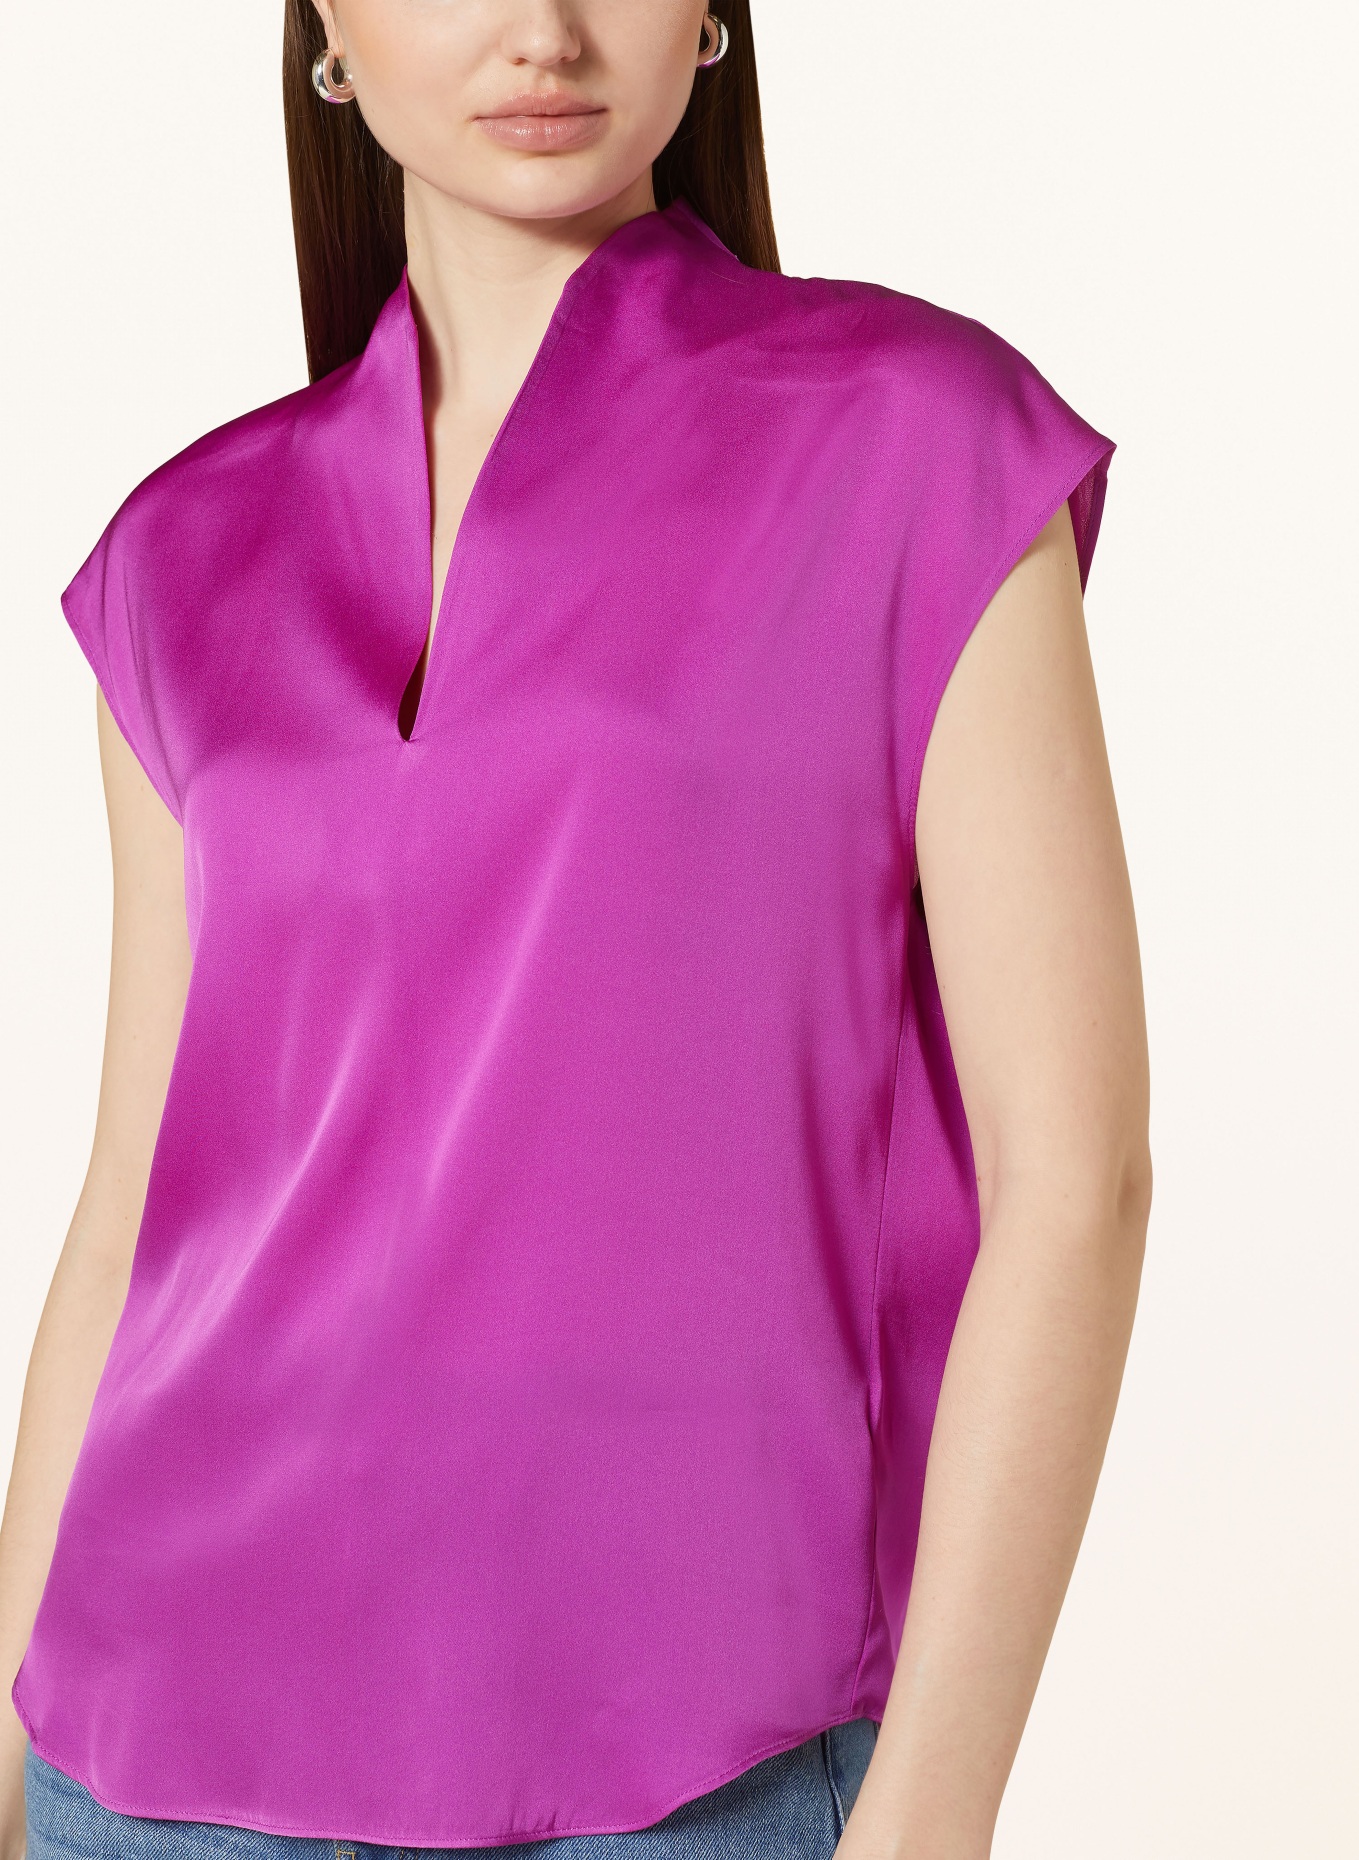 REPEAT Silk top, Color: FUCHSIA (Image 4)